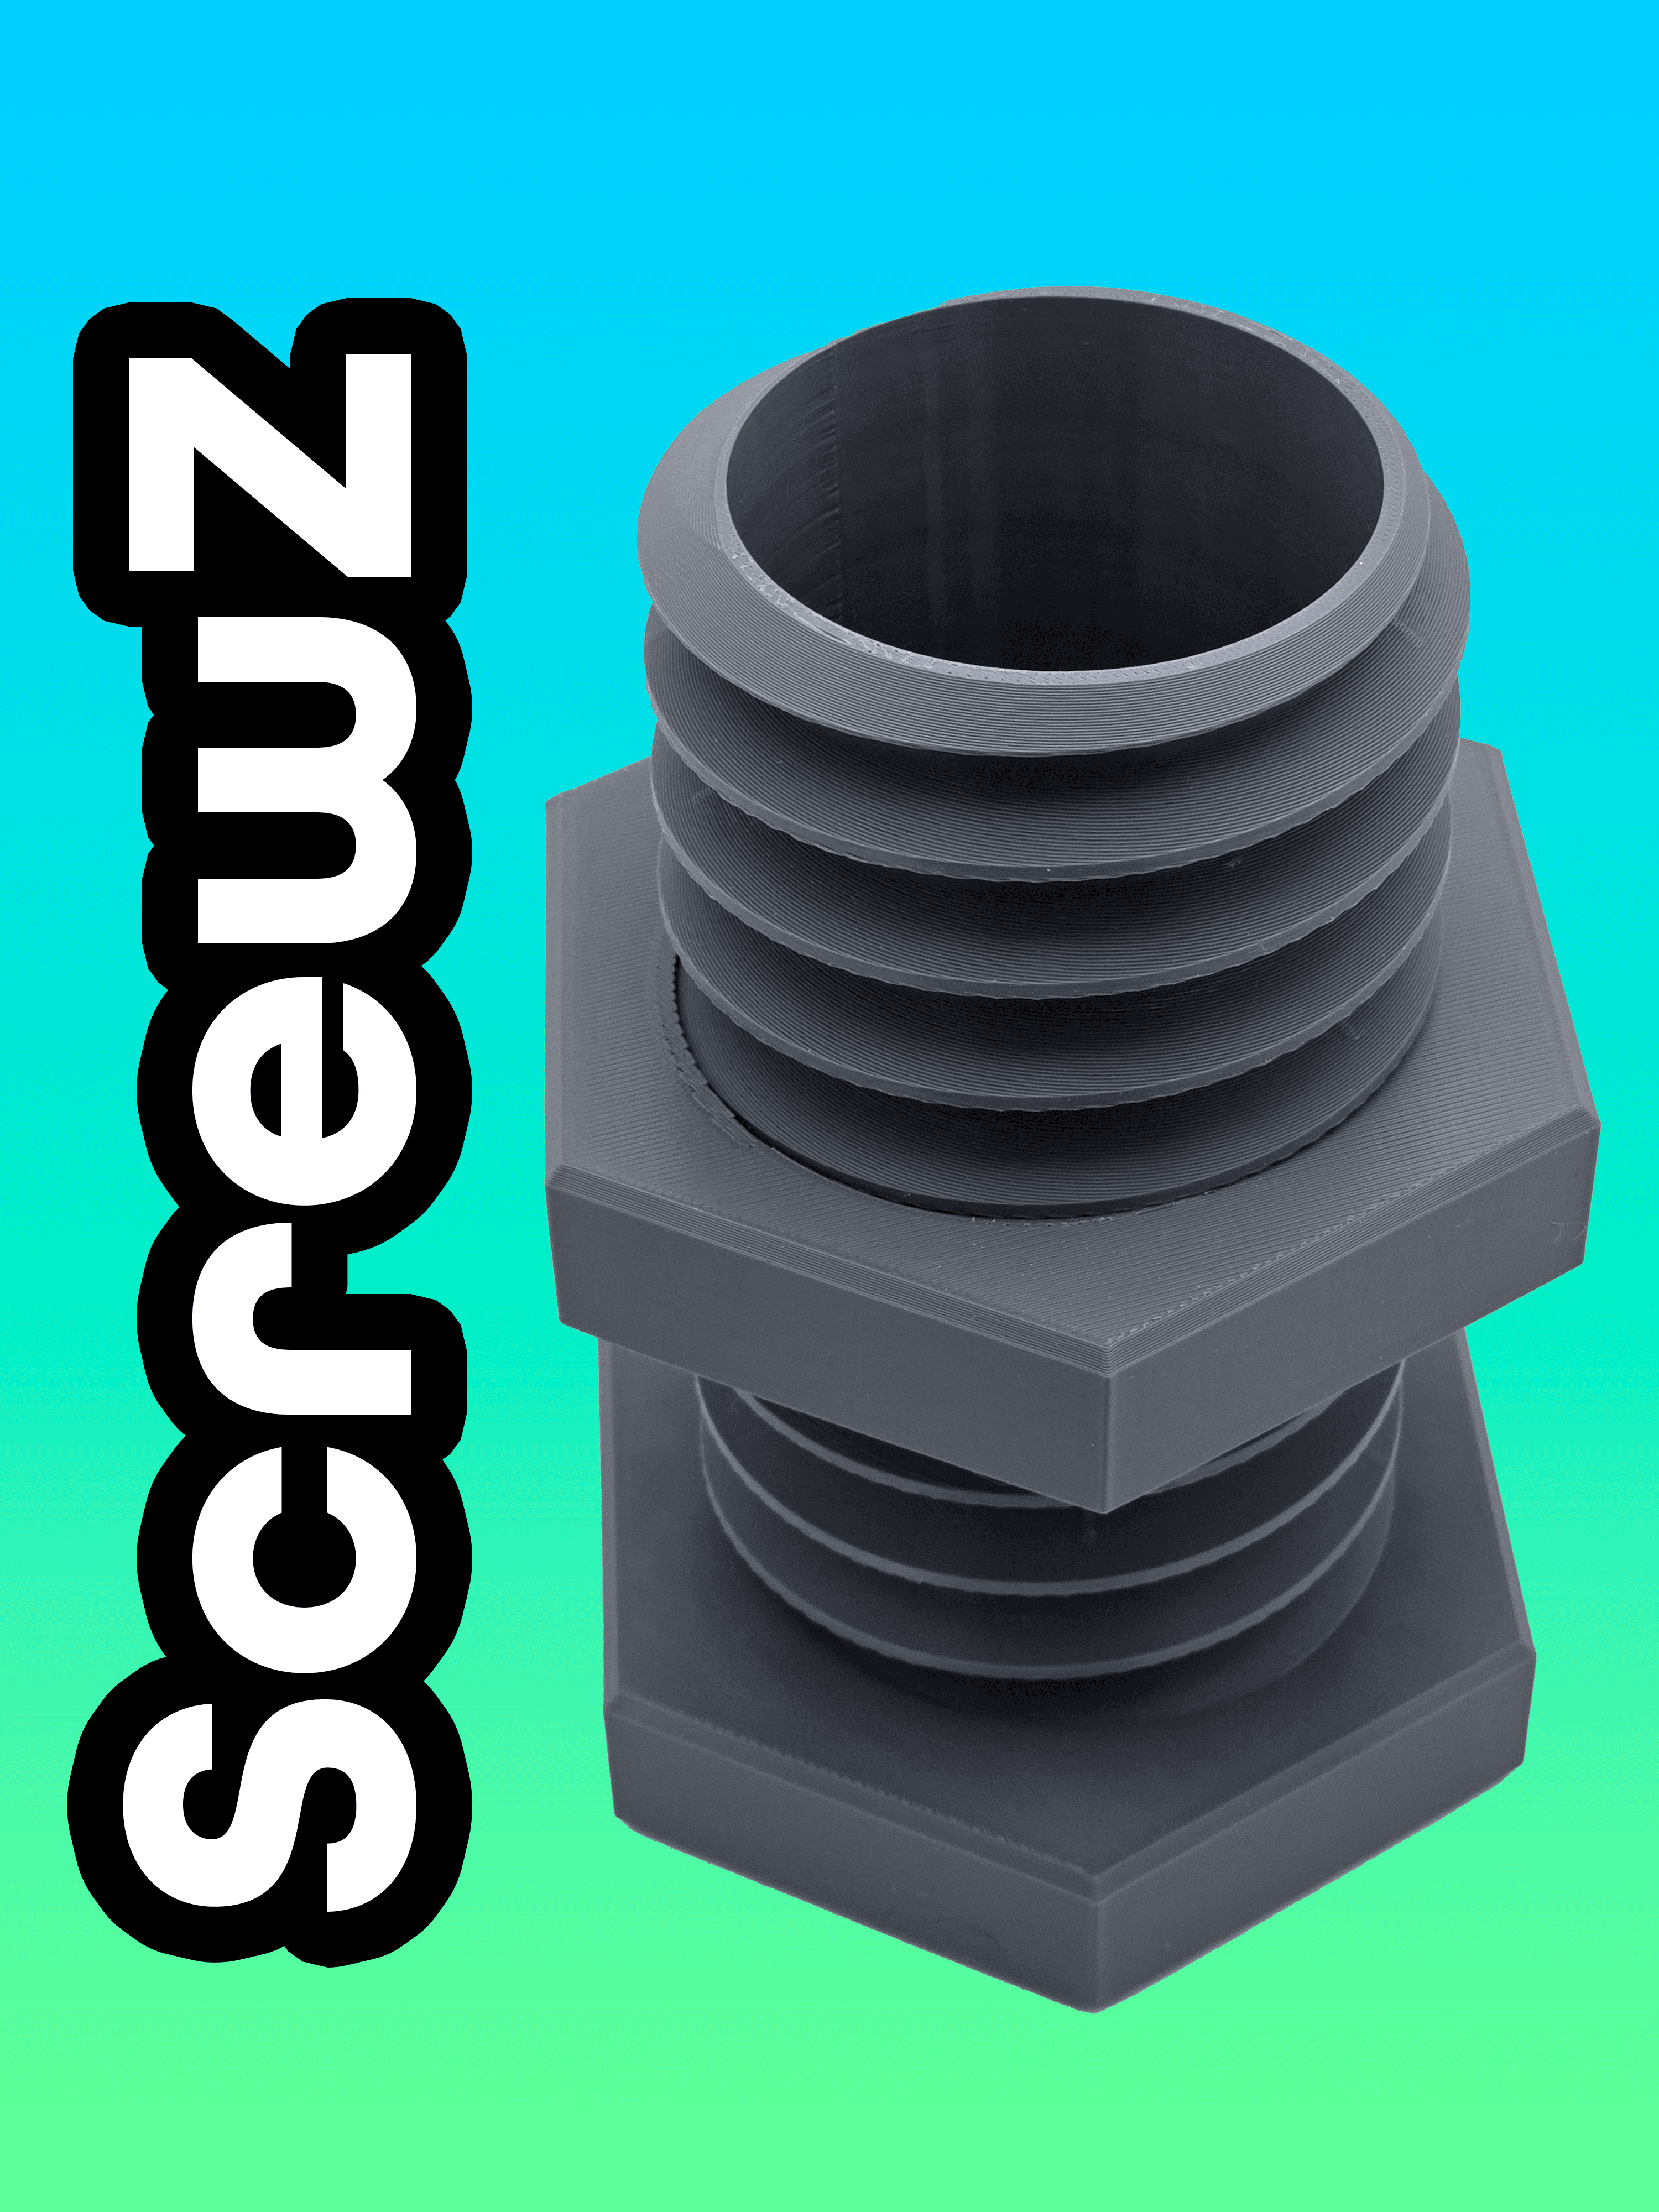 ScrewZ Koozie - The Functional Screw Can Koozie 3d model